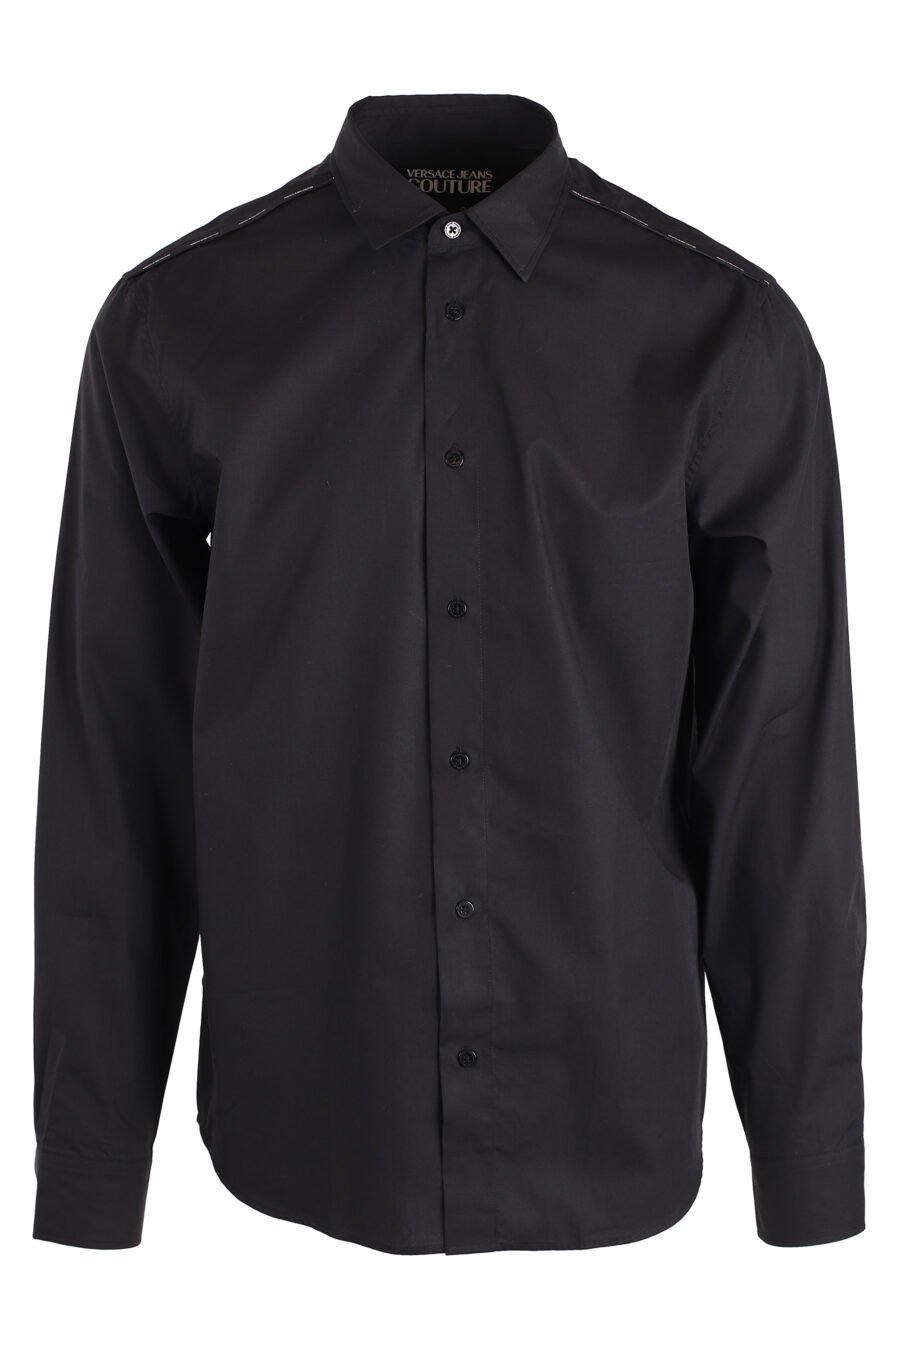 Camisa negra de botones - IMG 4130